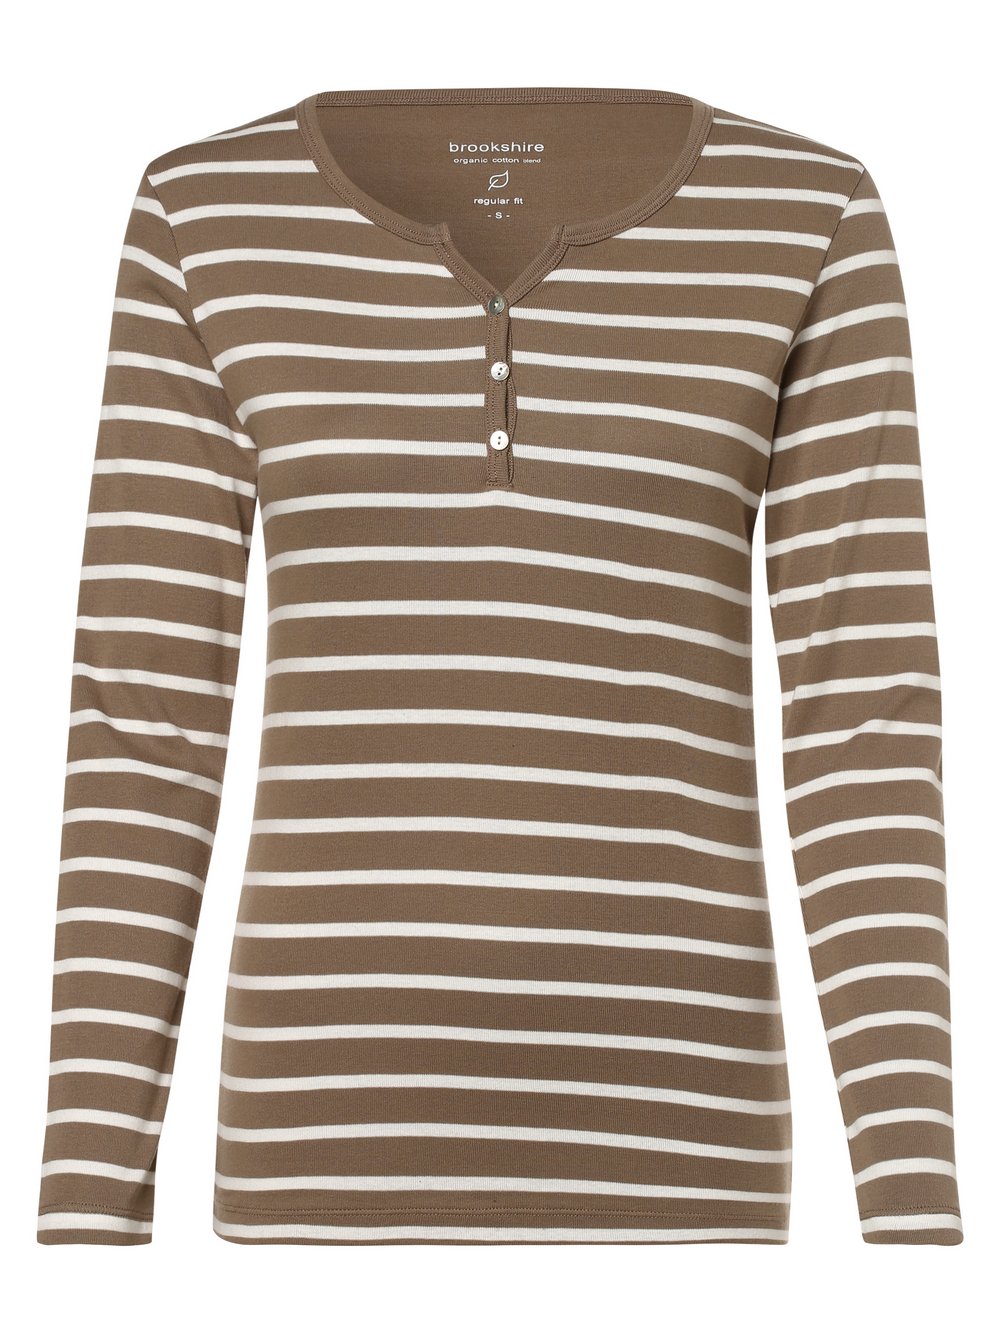 Brookshire - Damska koszulka z długim rękawem, beżowy|brązowy